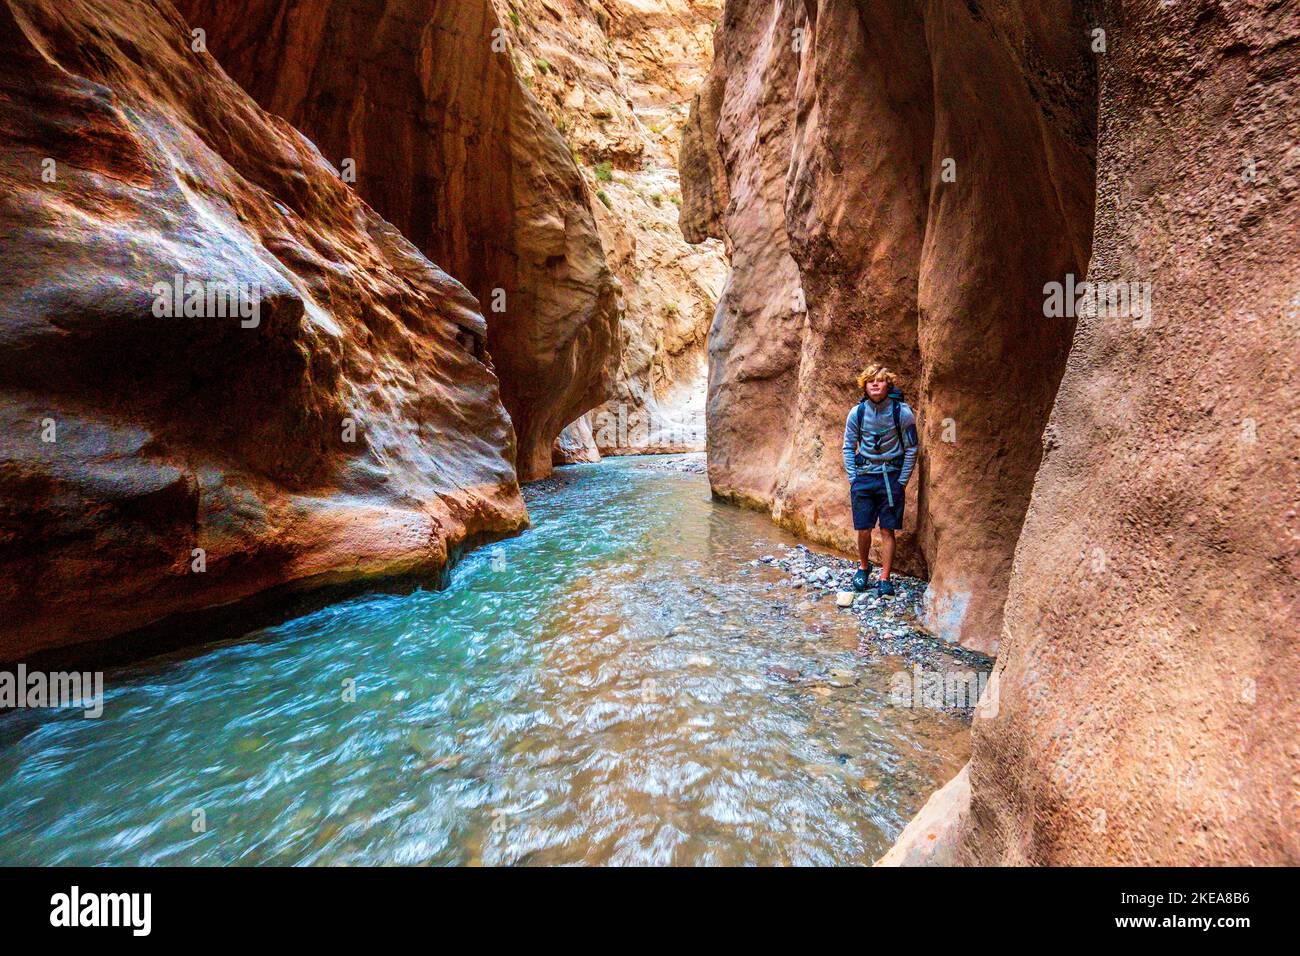 Ein Trekker in der M'Goun-Schlucht im Atlasgebirge von Marokko Stockfoto